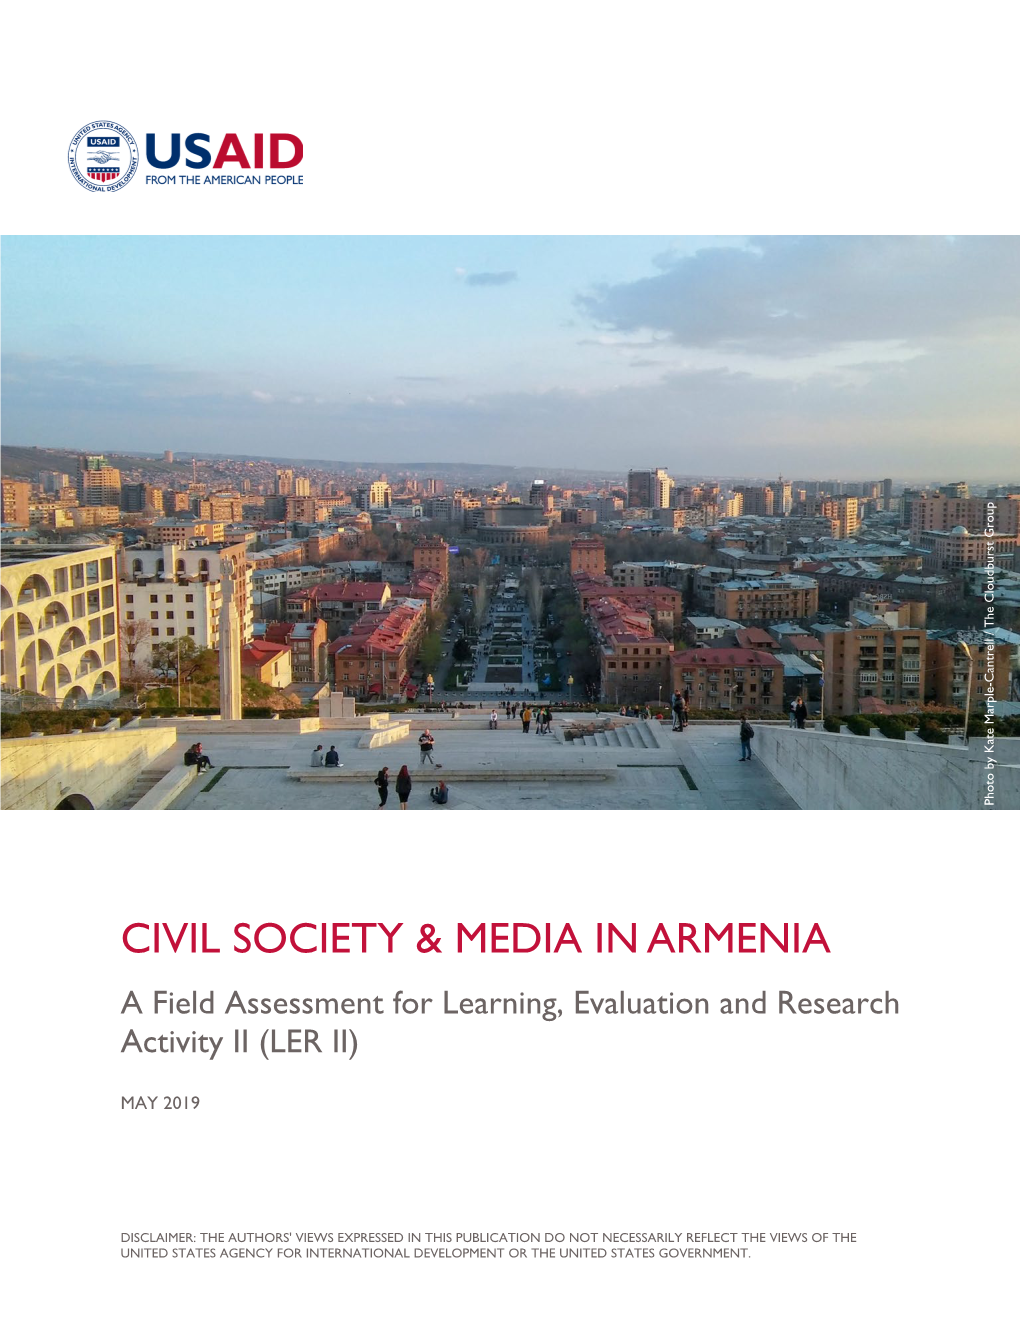 Civil Society & Media in Armenia